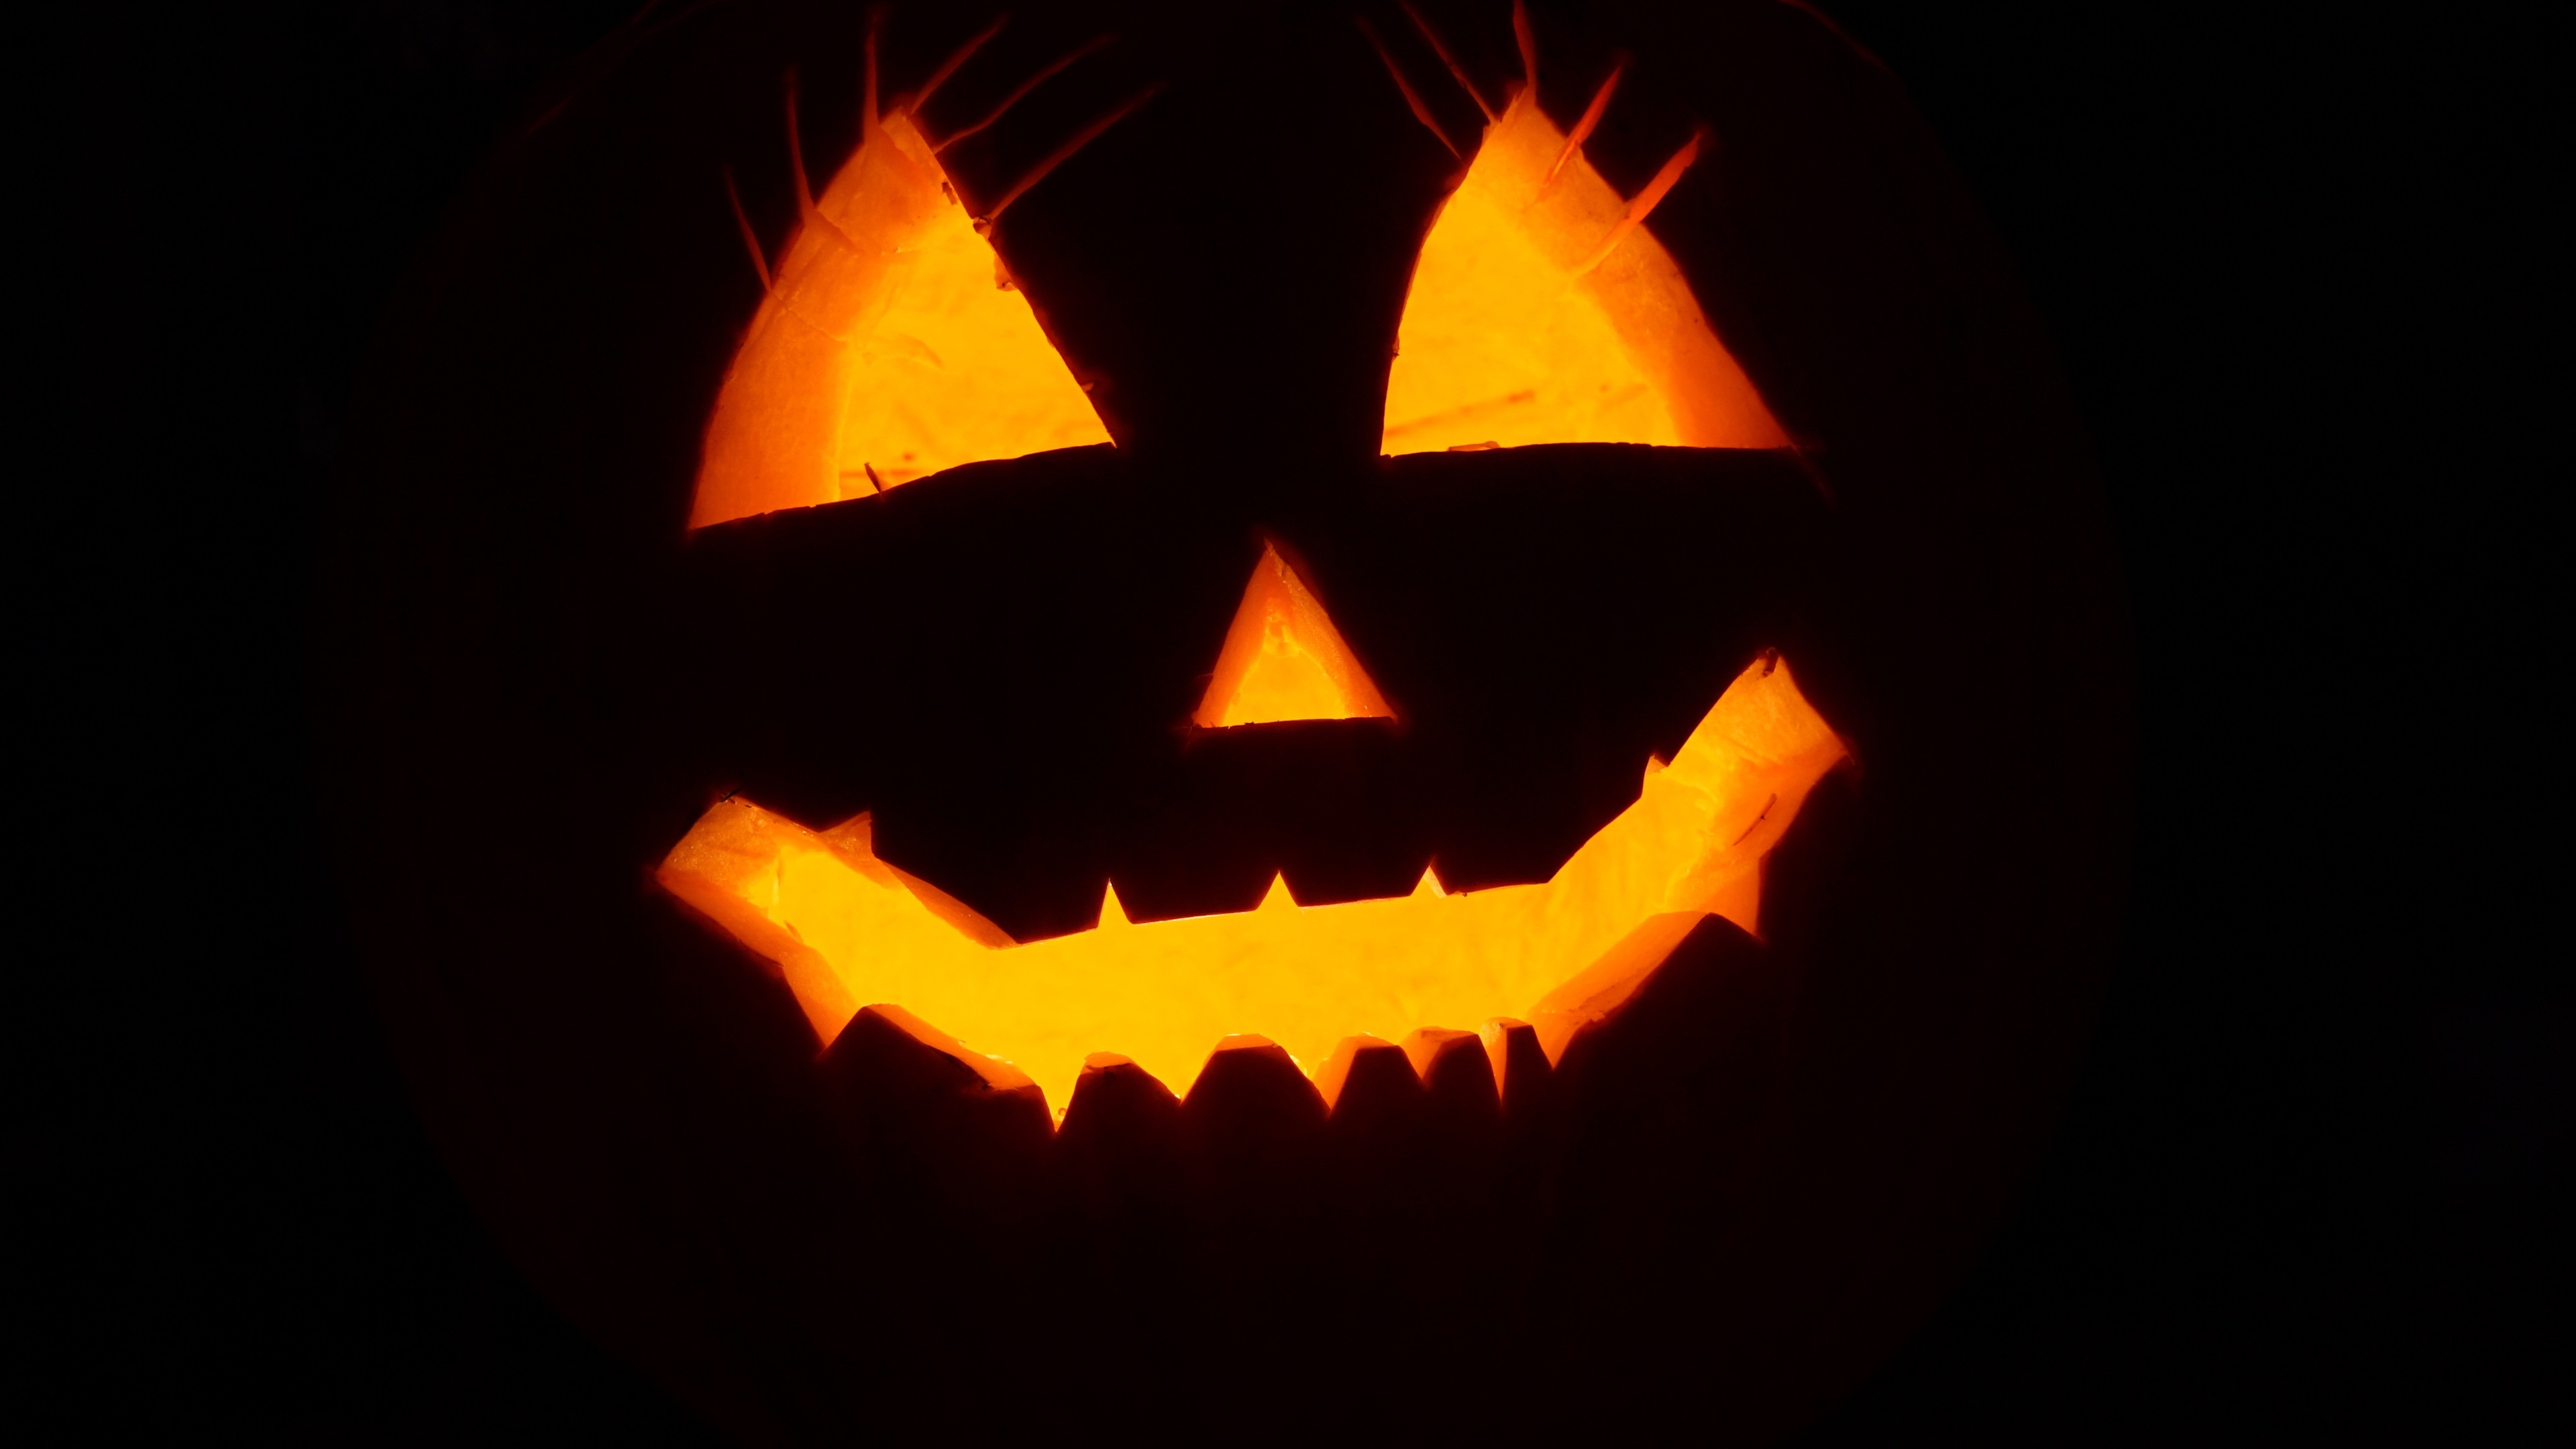 Wallpaper Halloween, Pumpkin Light, Face, Black Background - Trick Or Treating Halloween - HD Wallpaper 